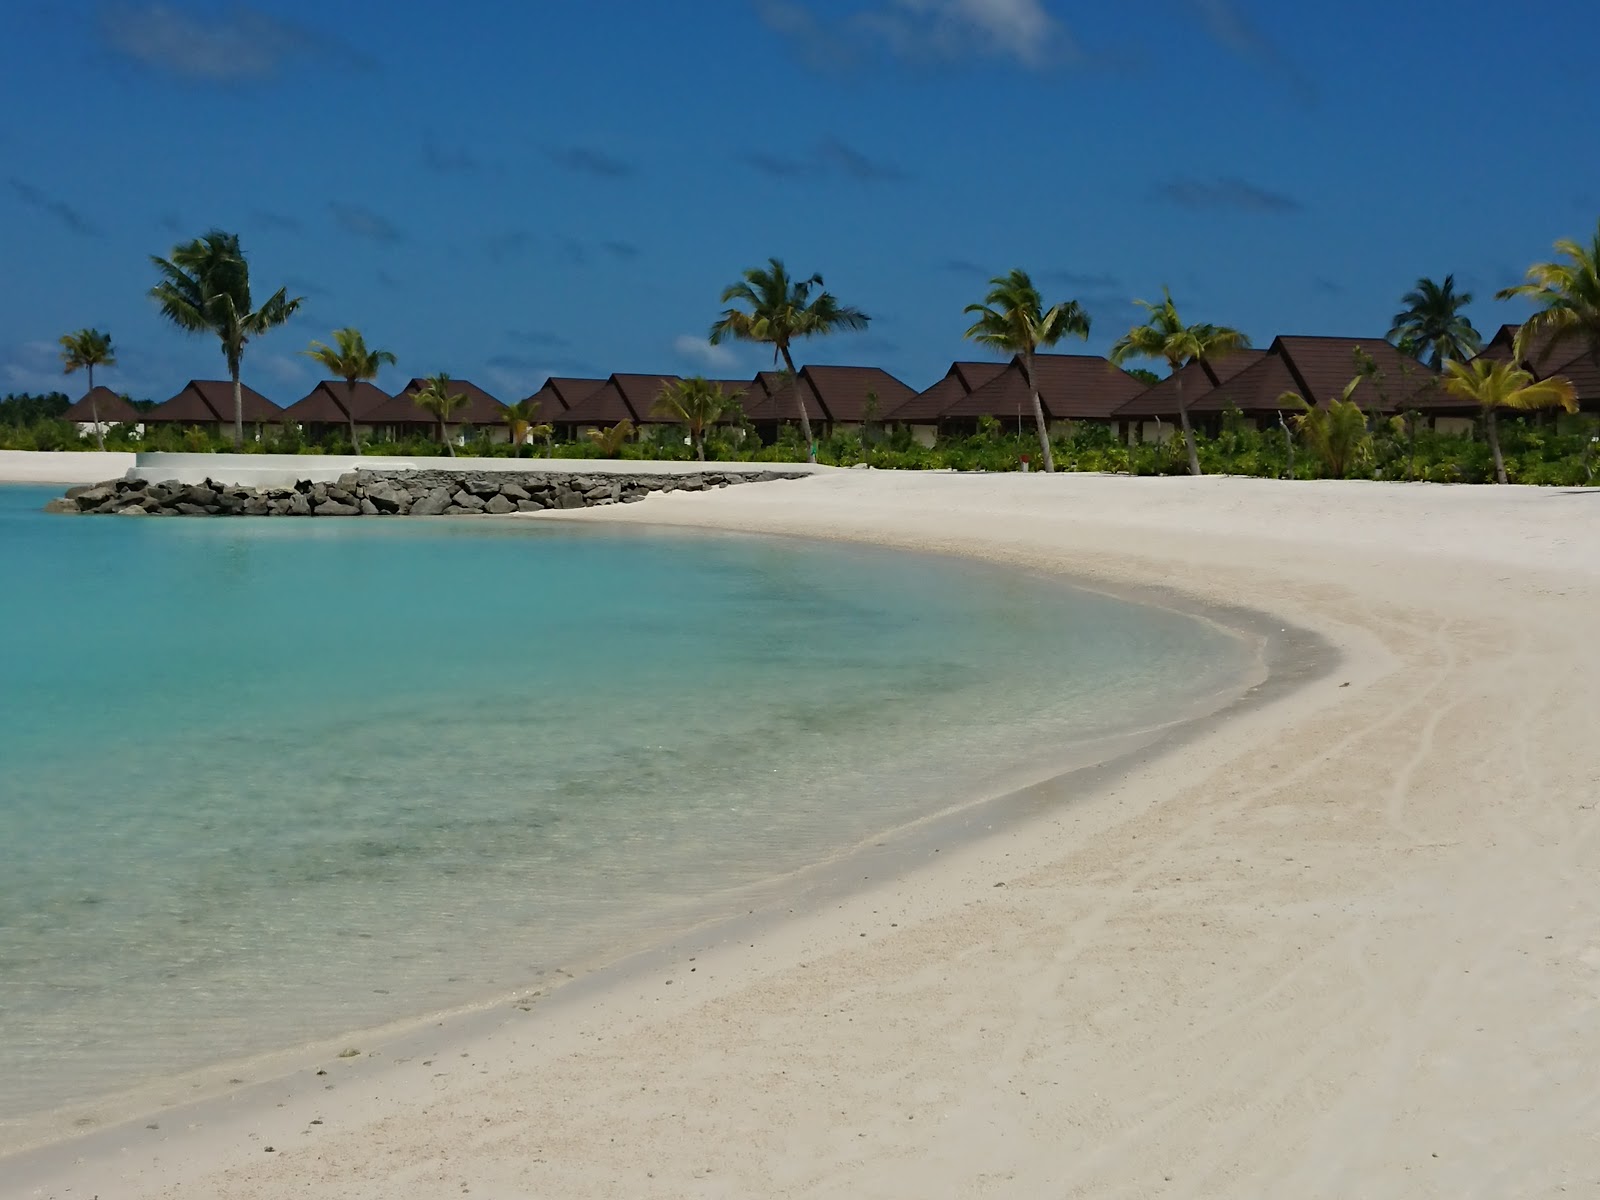 Fotografie cu Varu Resort Island cu o suprafață de nisip alb